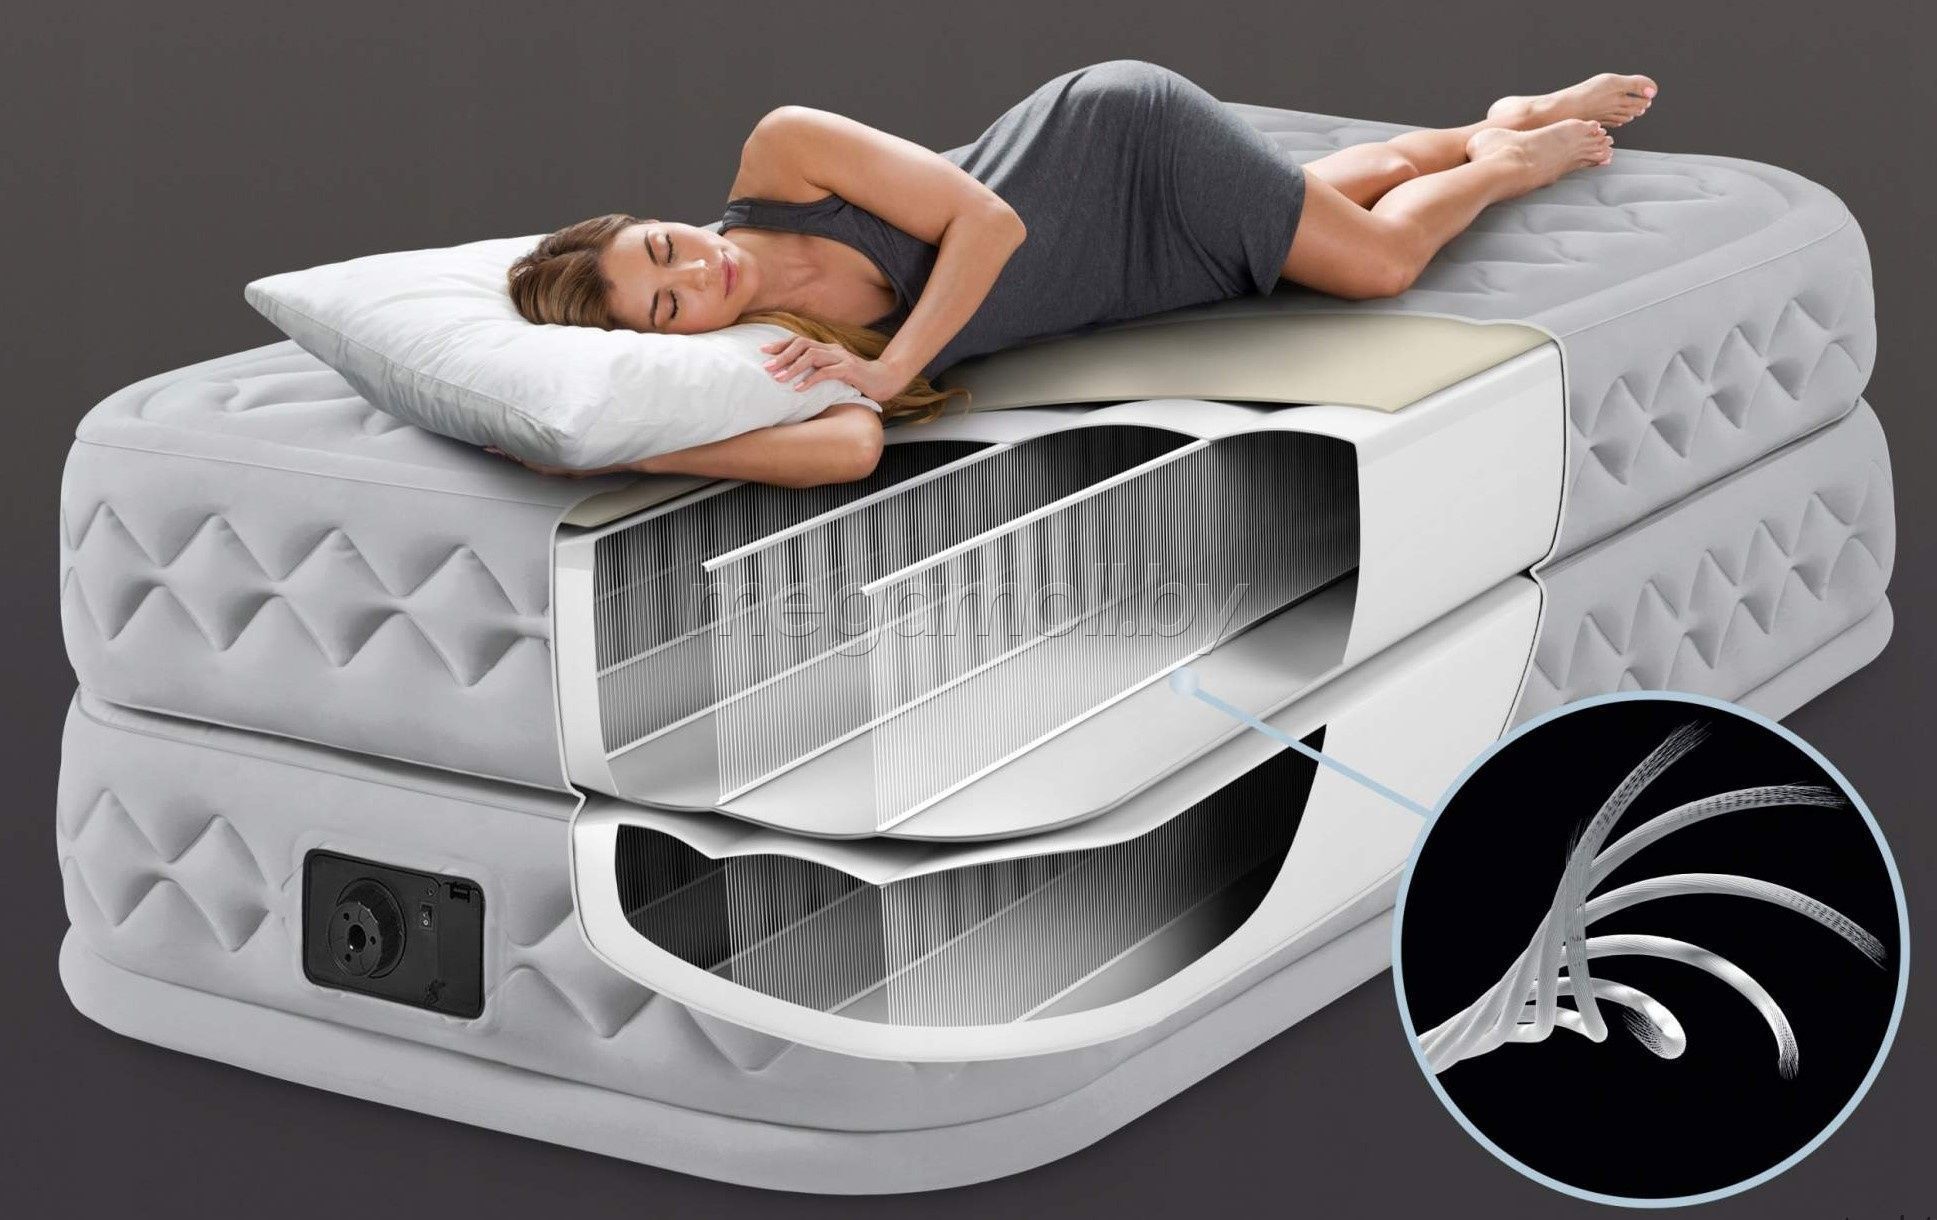 Надувная кровать intex supreme air flow